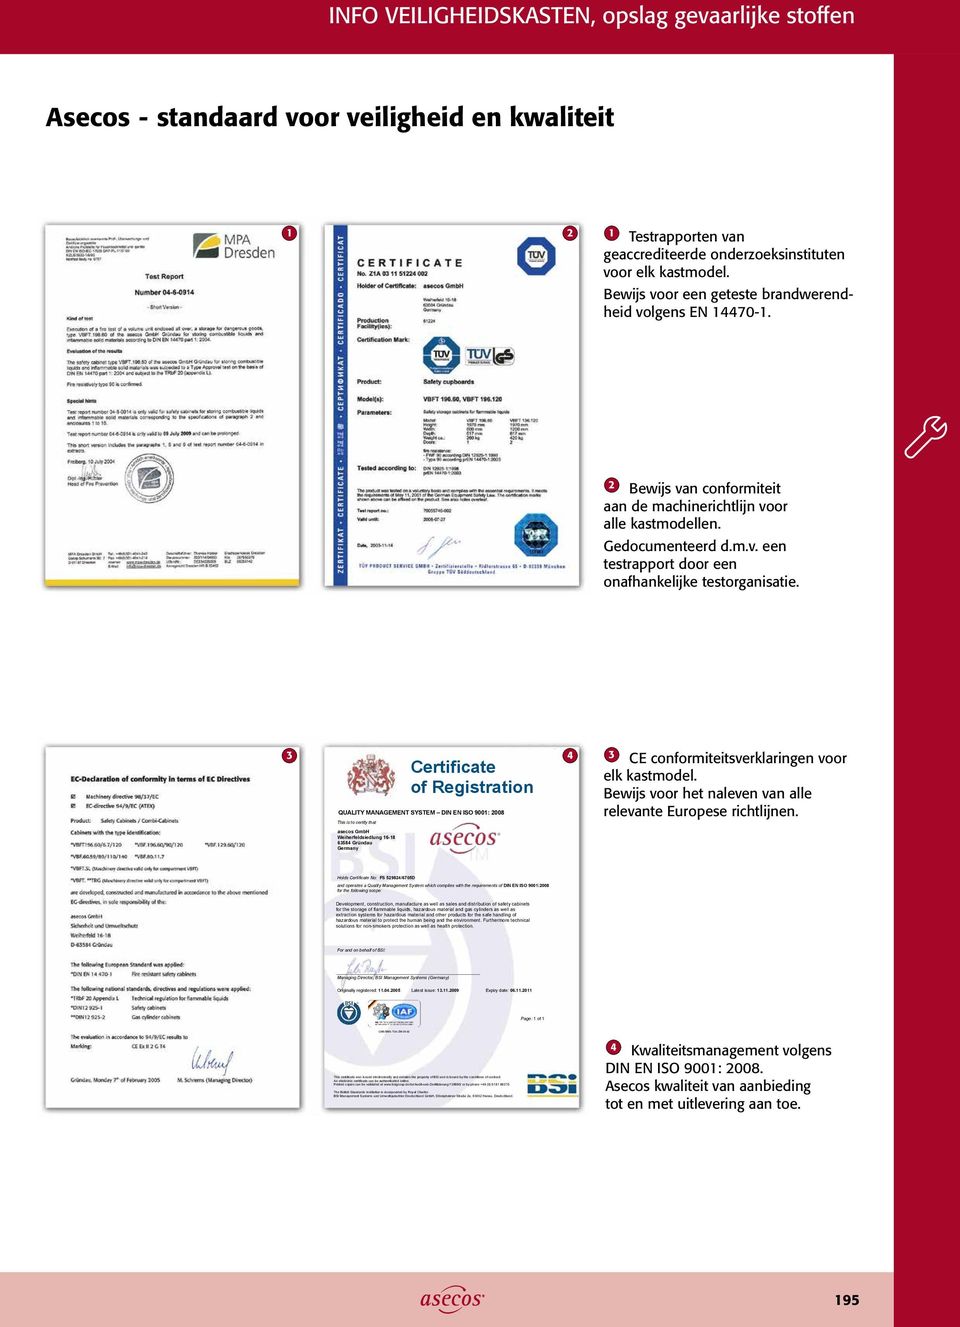 3 Certificate of Registration QUALITY MANAGEMENT SYSTEM DIN EN ISO 9001: 2008 4 3 CE conformiteitsverklaringen voor elk kastmodel. Bewijs voor het naleven van alle relevante Europese richtlijnen.